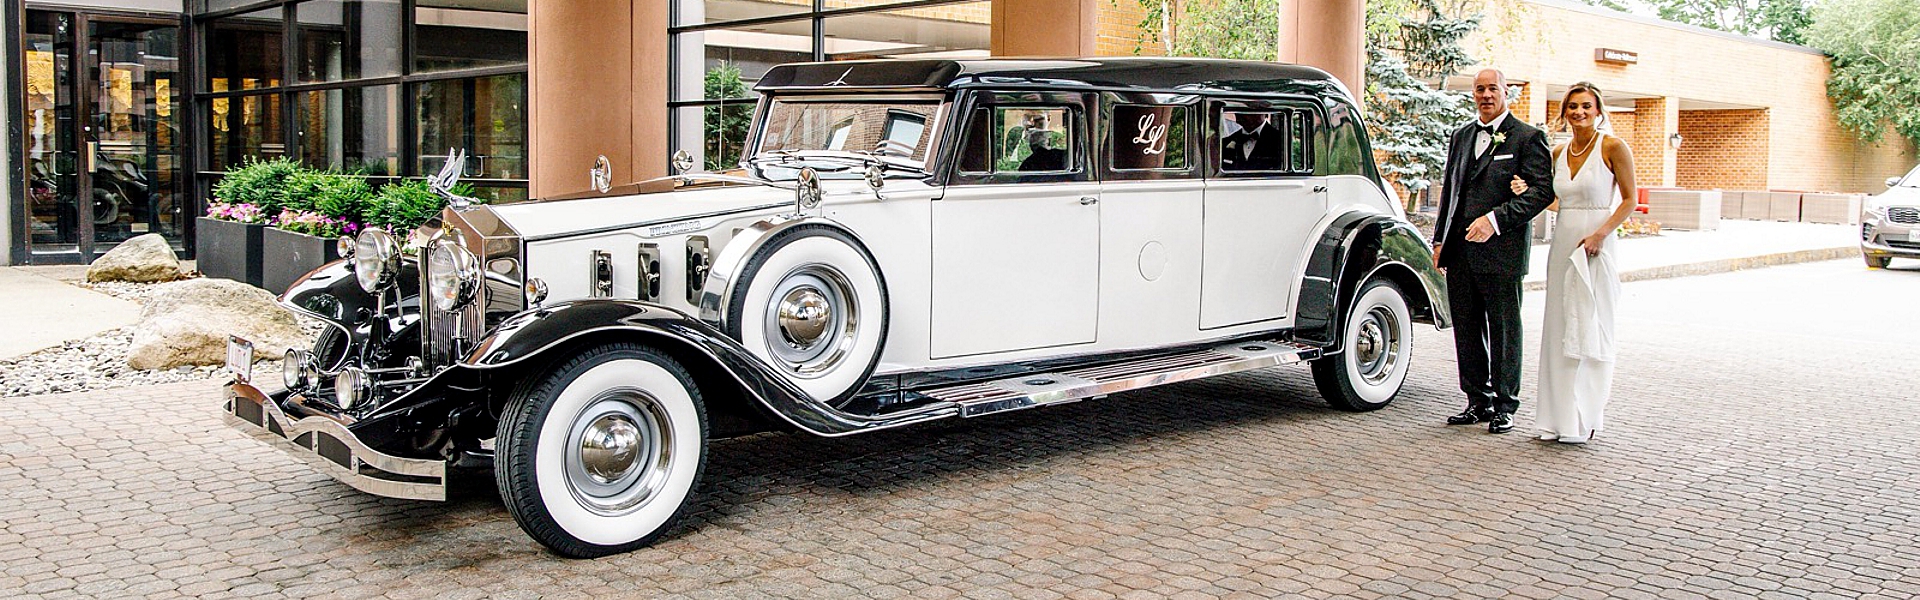 Ludwigs-Rolls-Royce-Prinzing-2